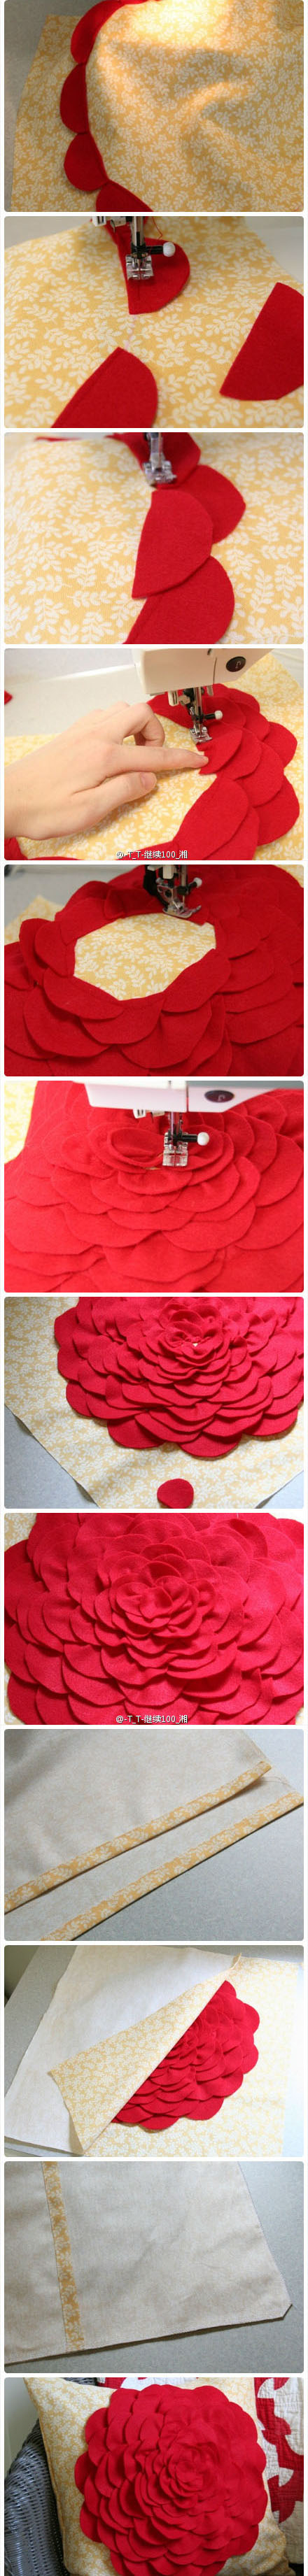 布艺DIY:给你的抱枕加一朵大红花